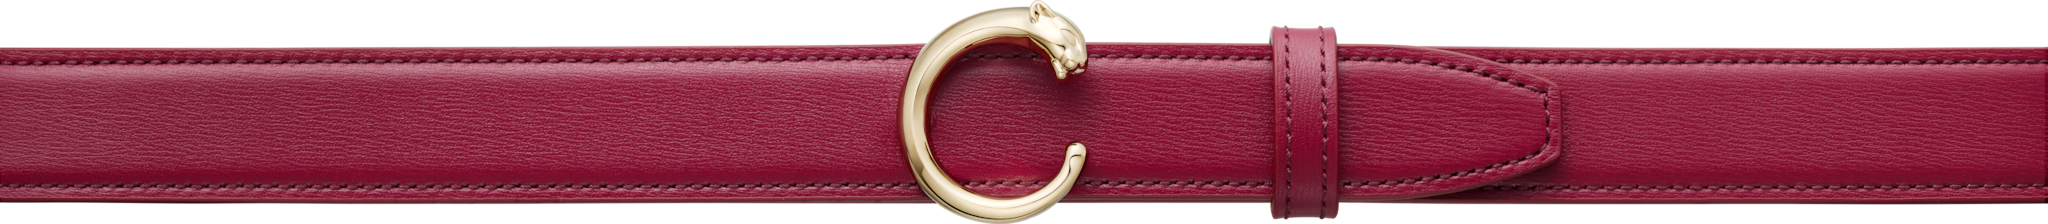 Panthère de Cartier beltCherry red cowhide, golden-finish buckle